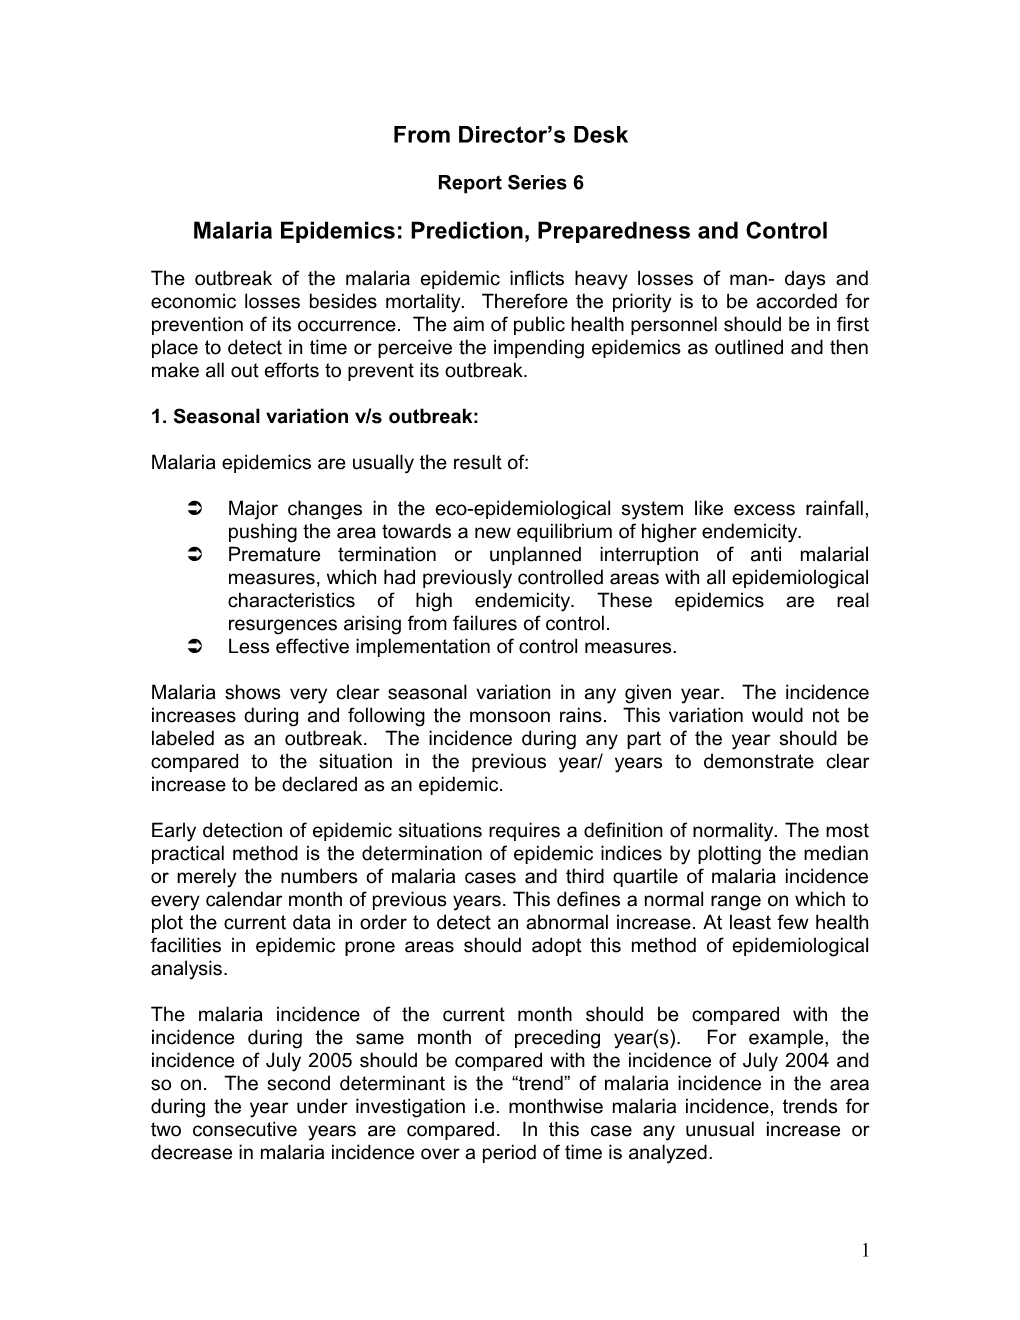 Malaria Epidemics: Prediction, Preparedness and Control